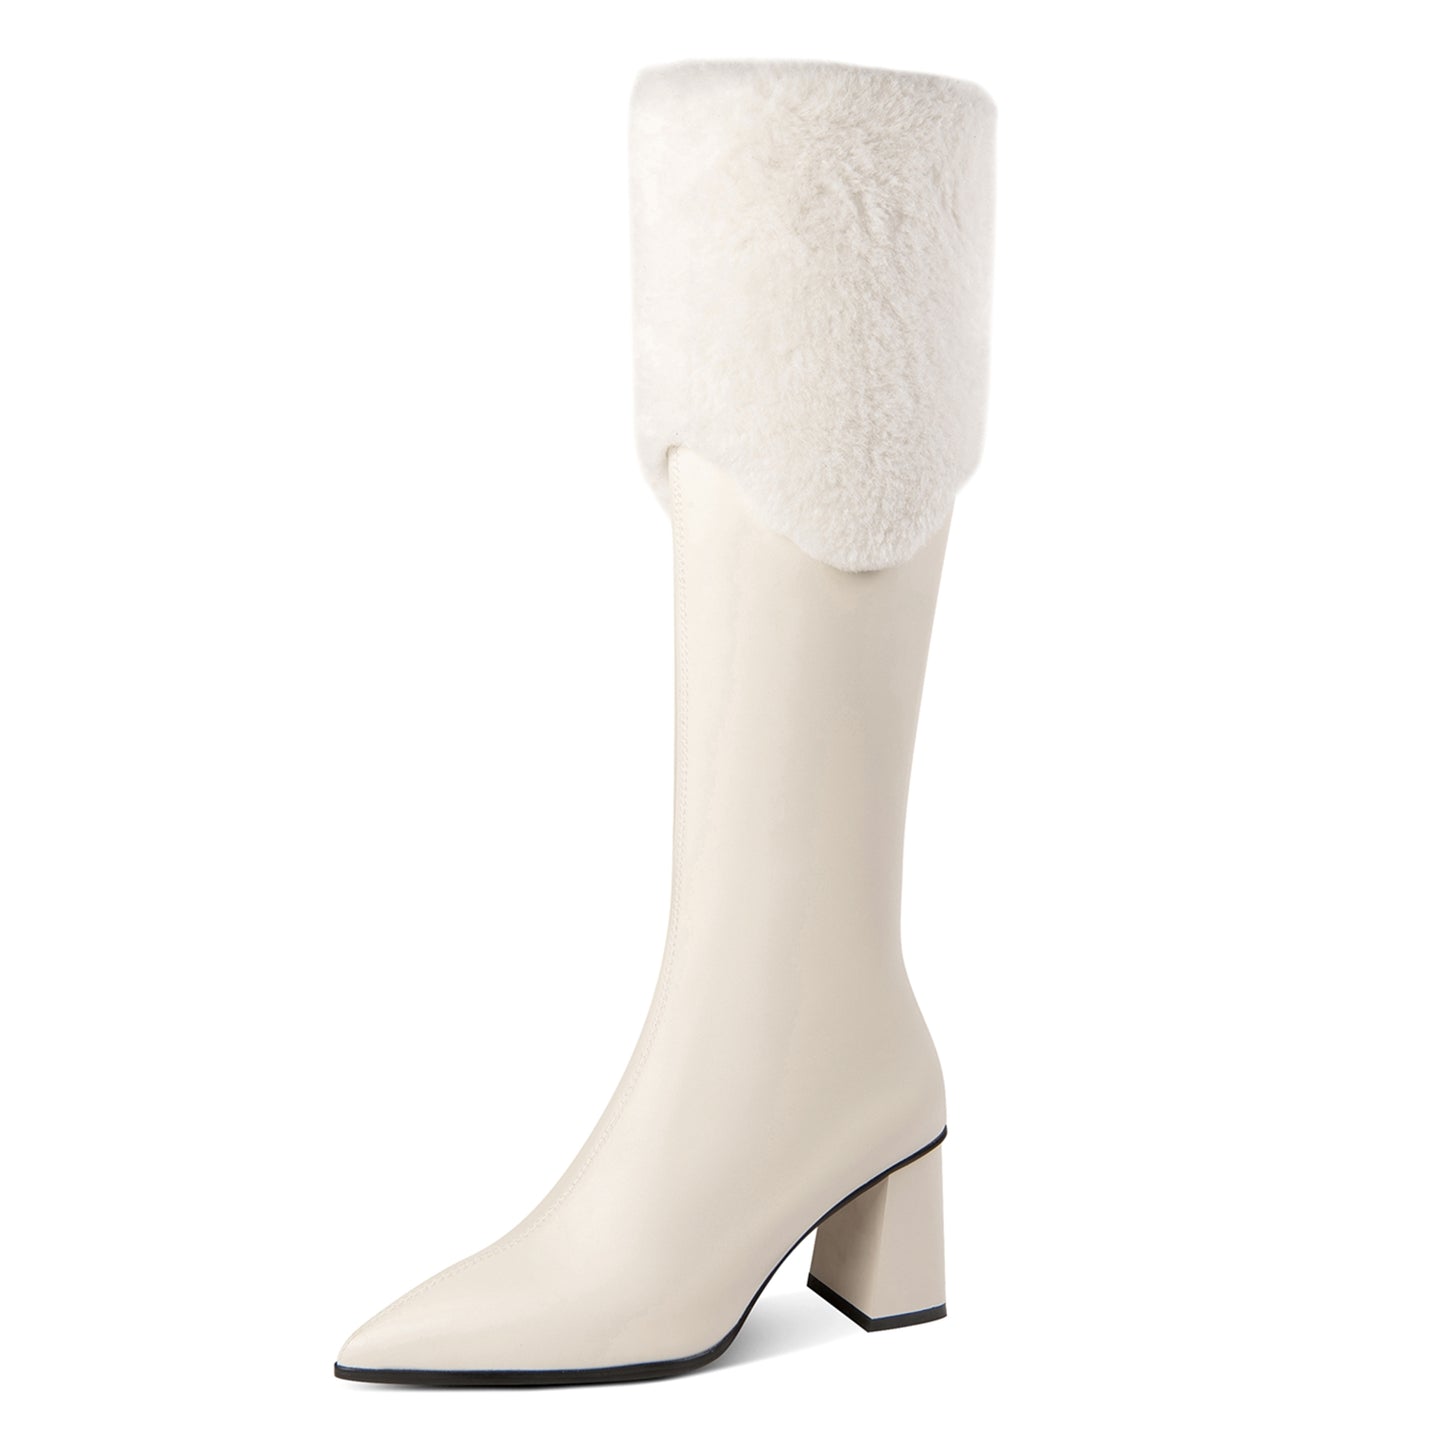 TinaCus Handmade Women's Genuine Leather Zip Up High Heel Fur Design Knee High Boots